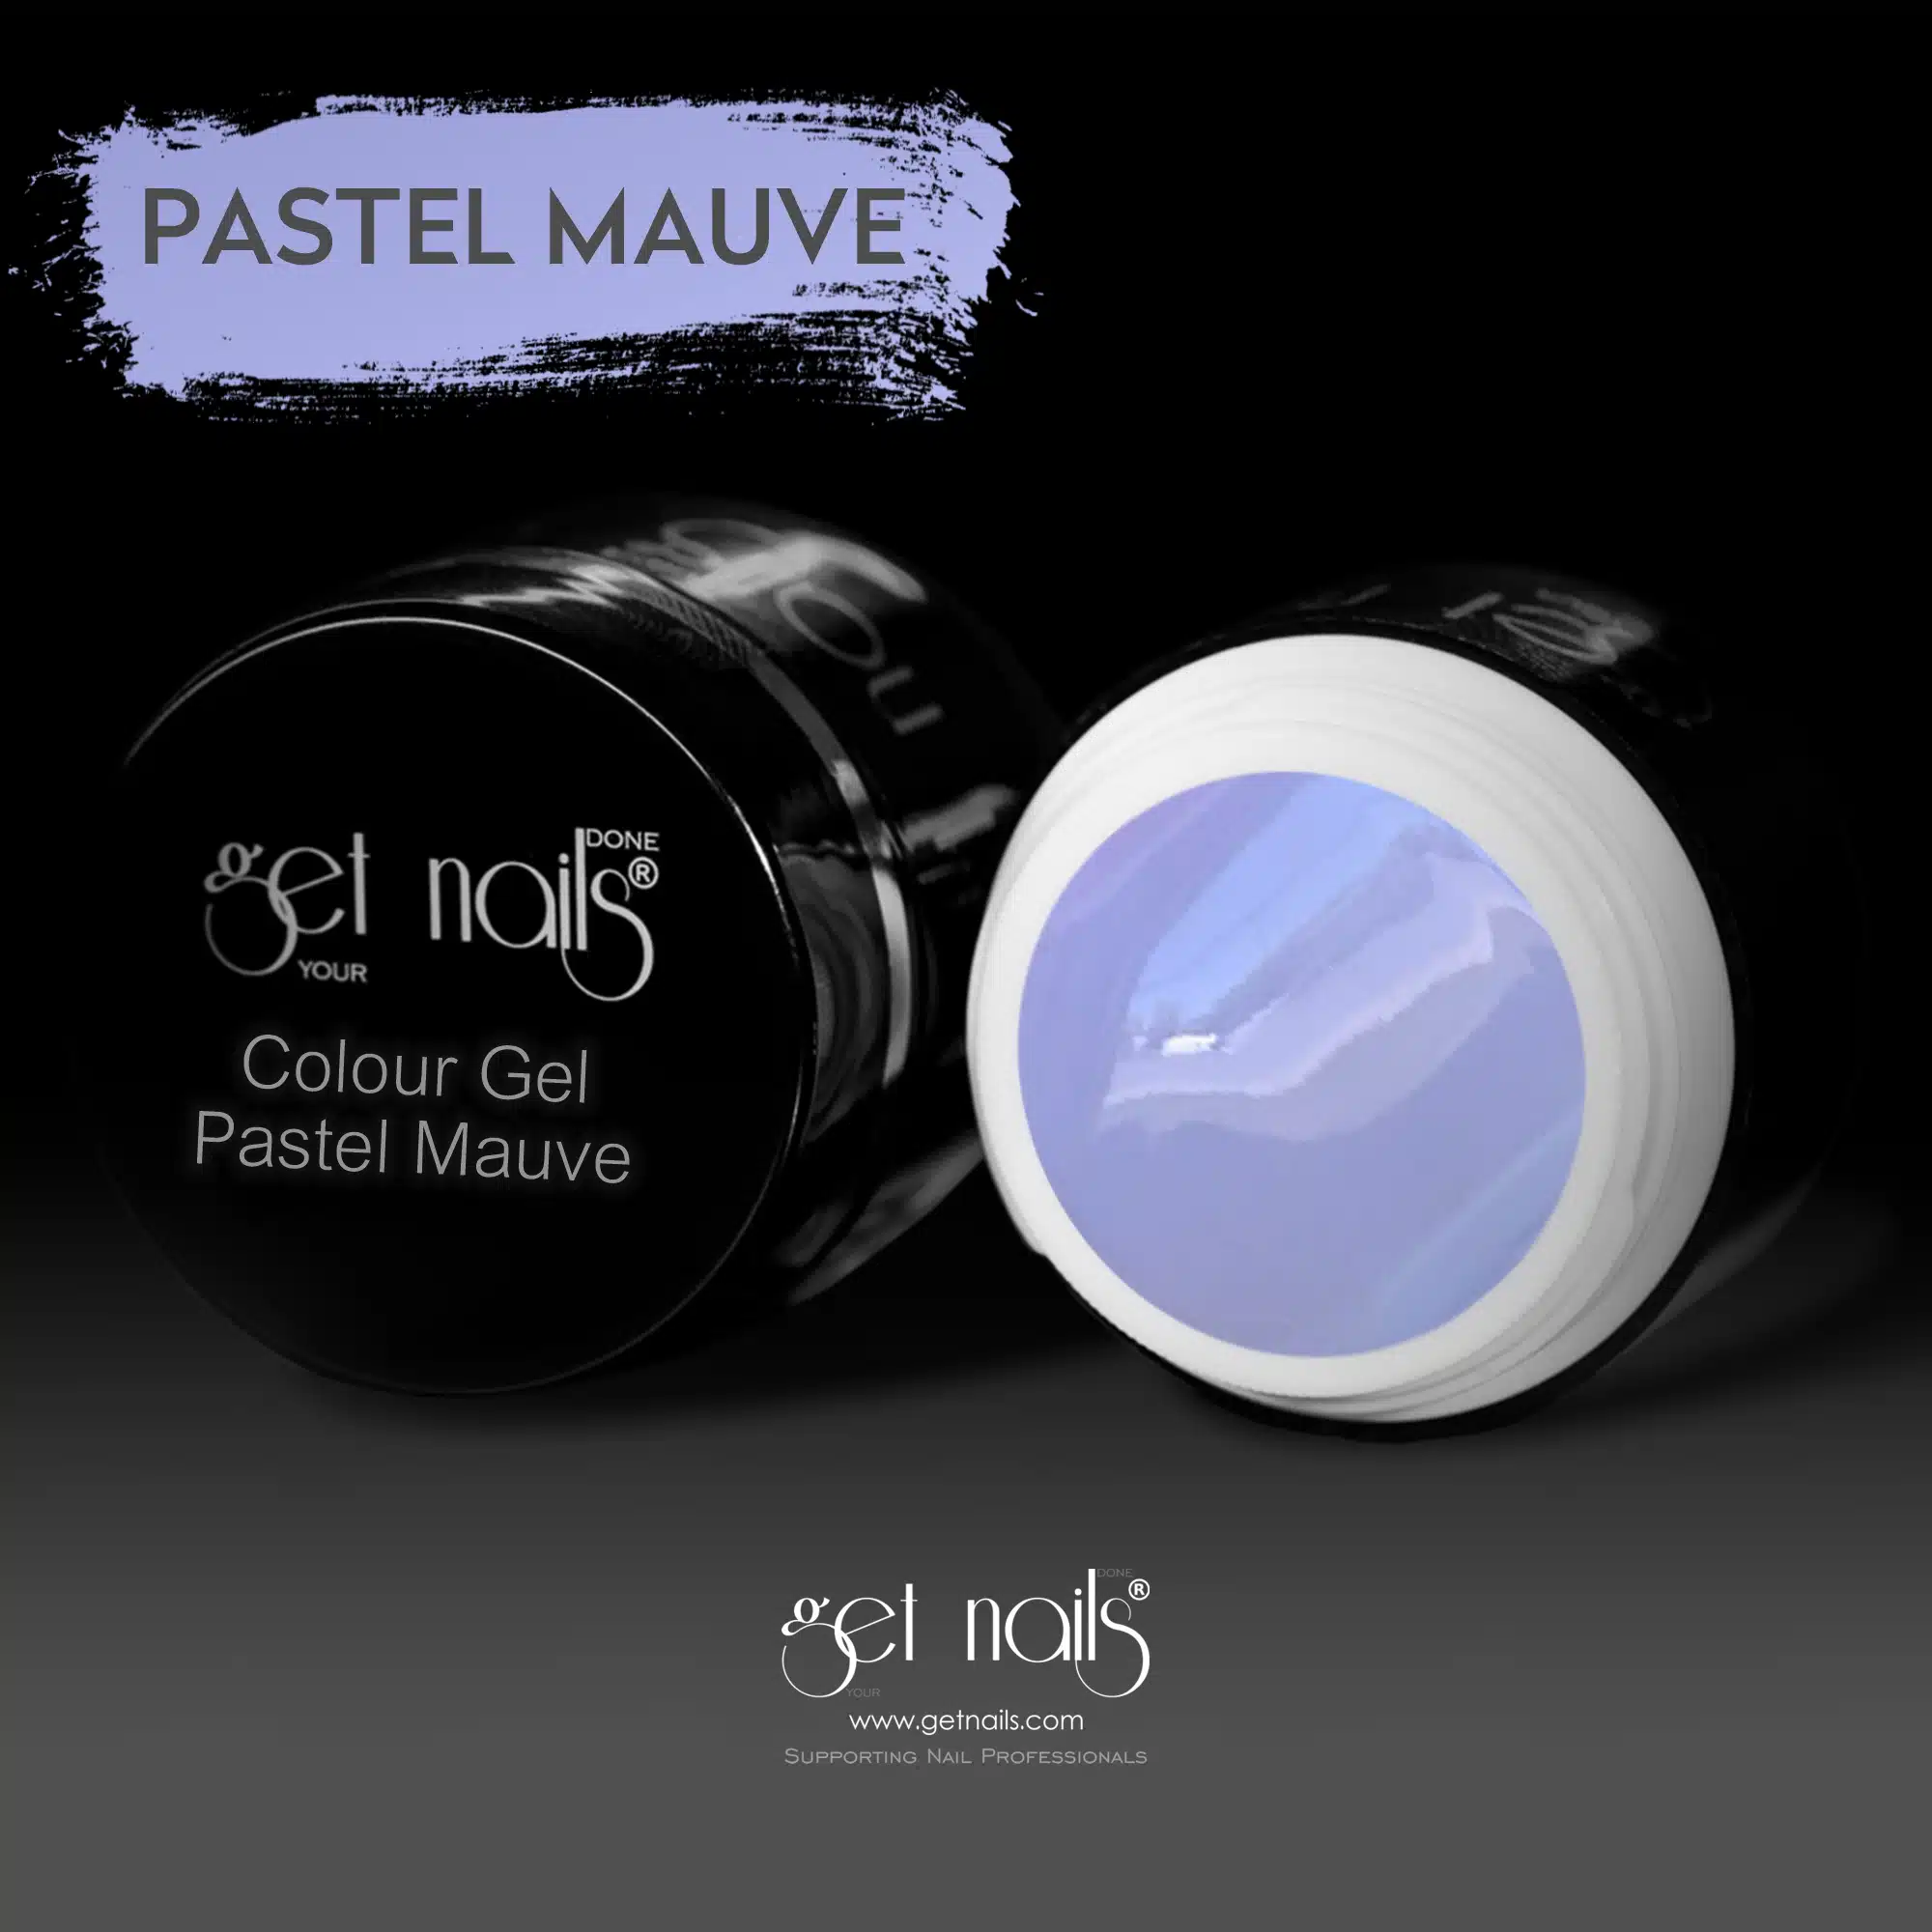 Get Nails Austria - Colour Gel Pastel Mauve 5g